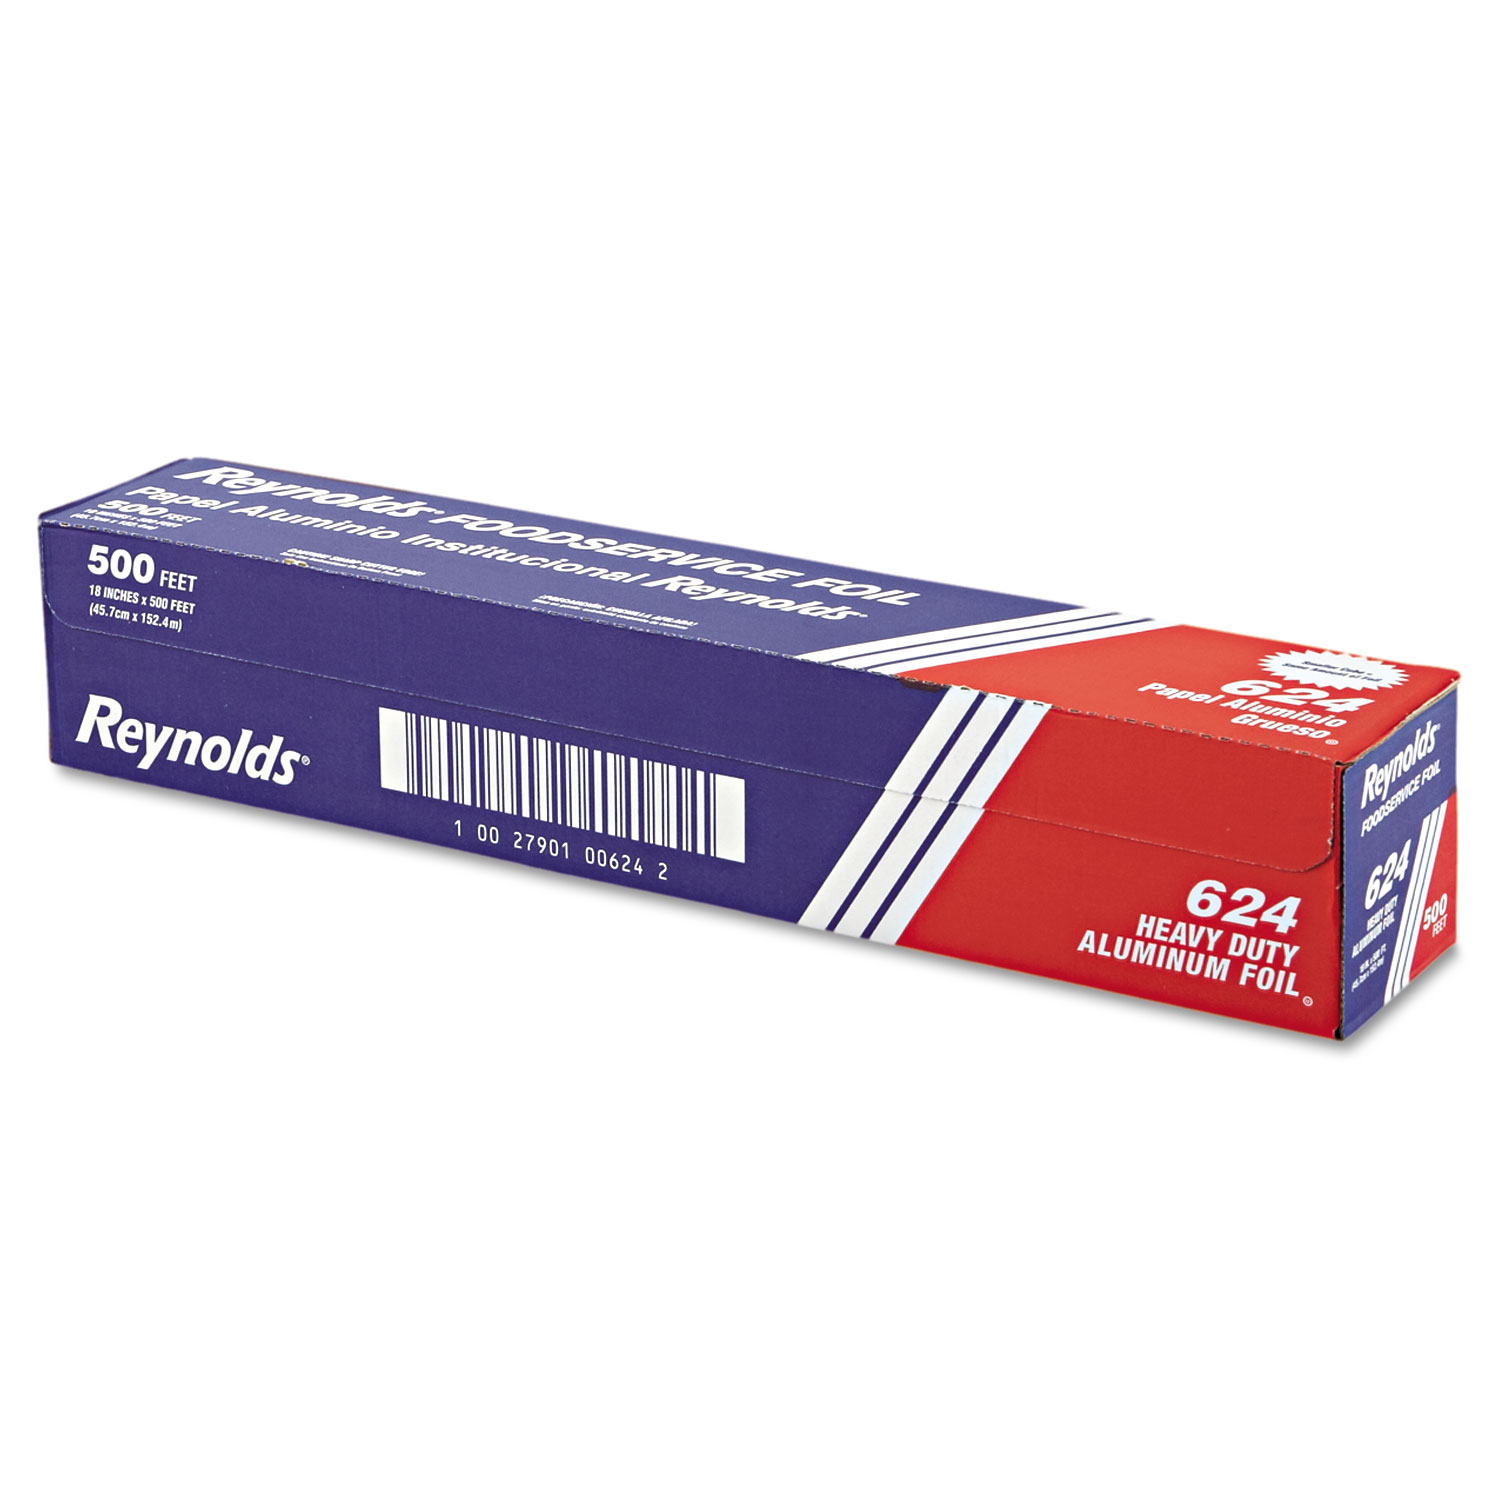  Reynolds Wrap 000000000000000624 Heavy Duty Aluminum Foil Roll, 18 x 500 ft, Silver (RFP624) 